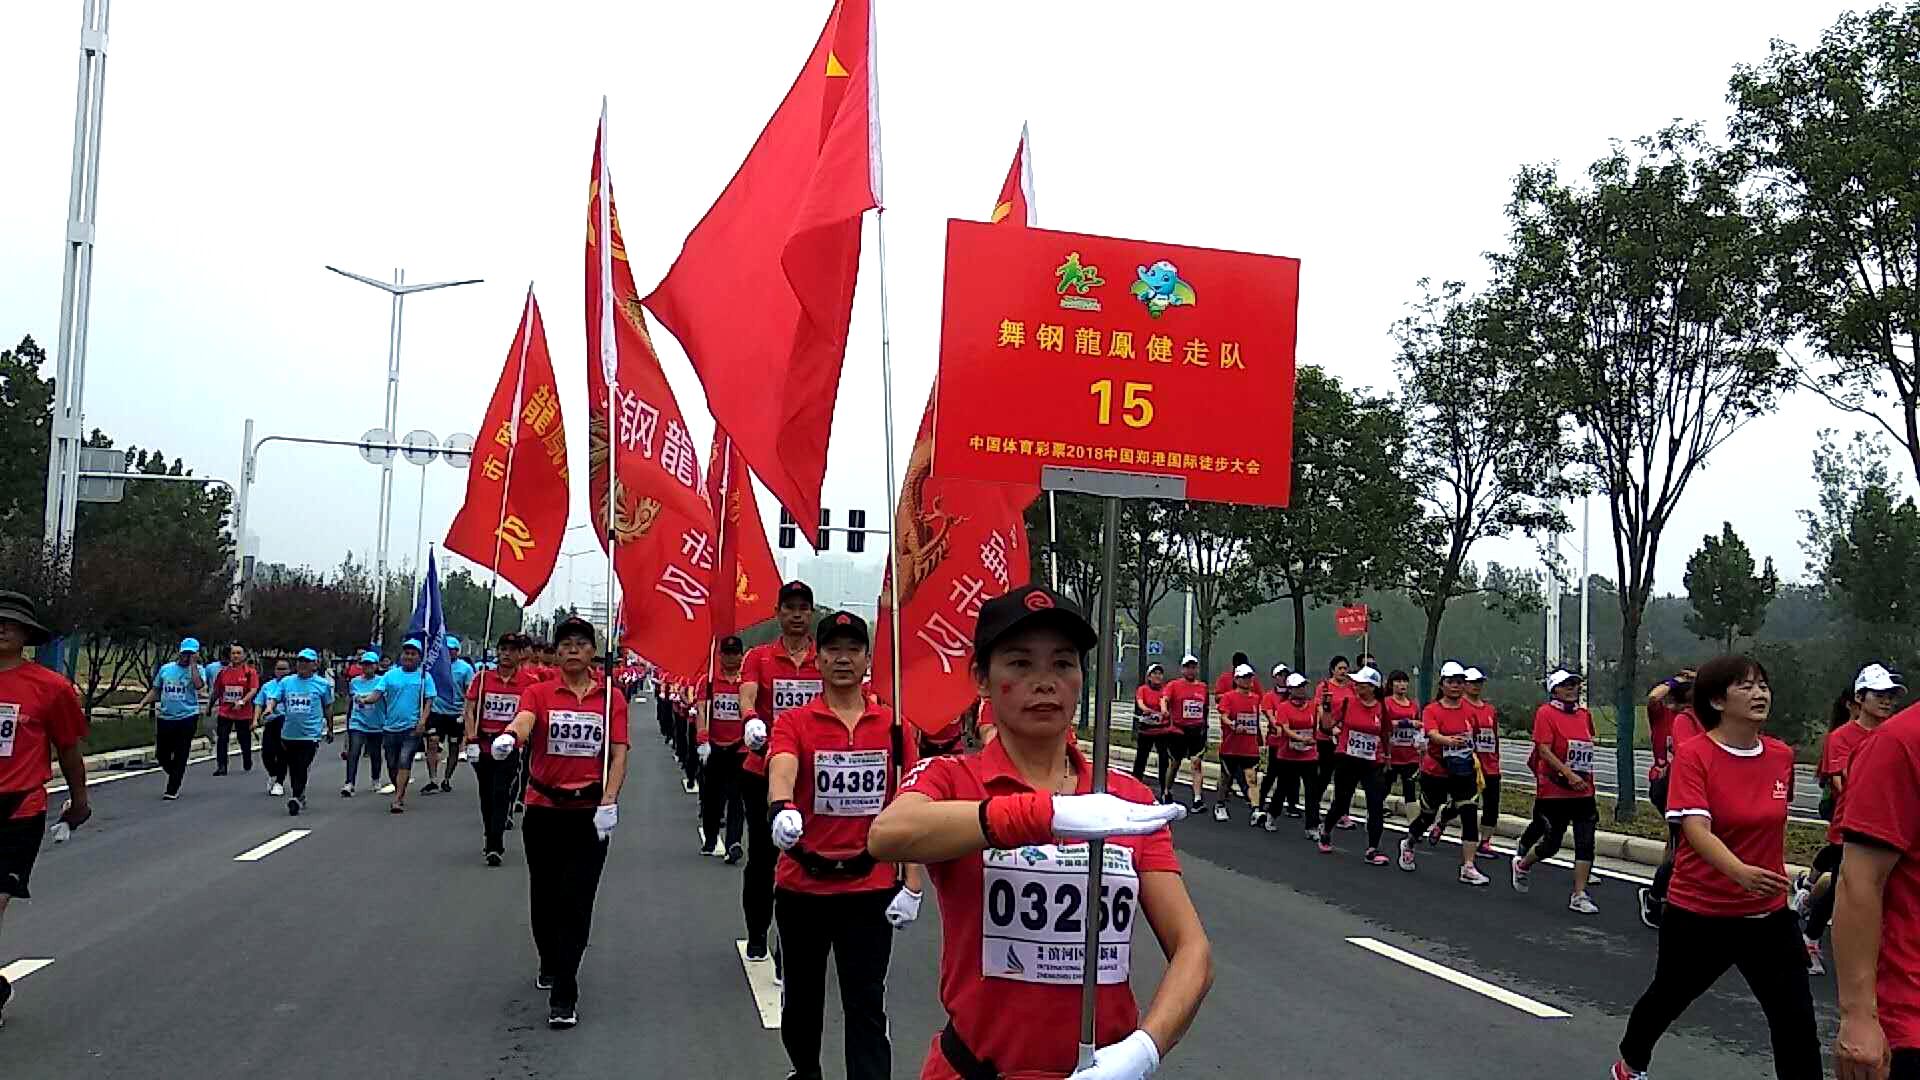 2018中国郑港国际徒步大会在郑举行